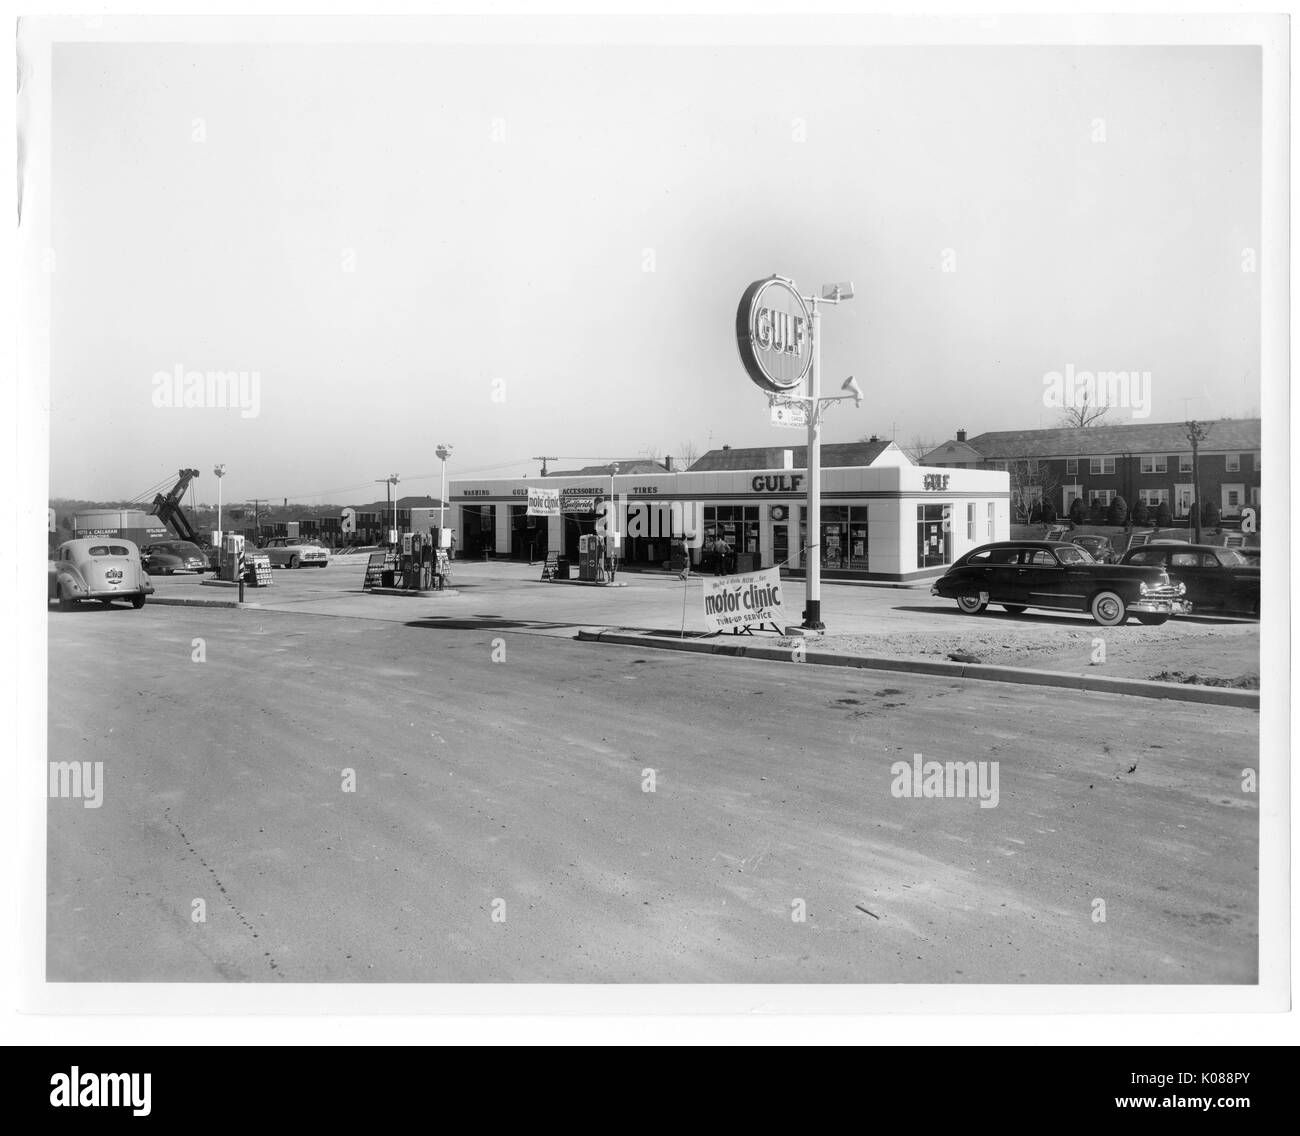 Blick über die Straße der Gulf Tankstelle, Golf auf dem Gebäude geworben wird, sowie auf ein großes Schild Treiber anzuziehen, die Tankstelle ist in hellen Farben gestrichen, Reihe Wohnungen an der Rückseite der Station, Baltimore, Maryland, 1951. Stockfoto